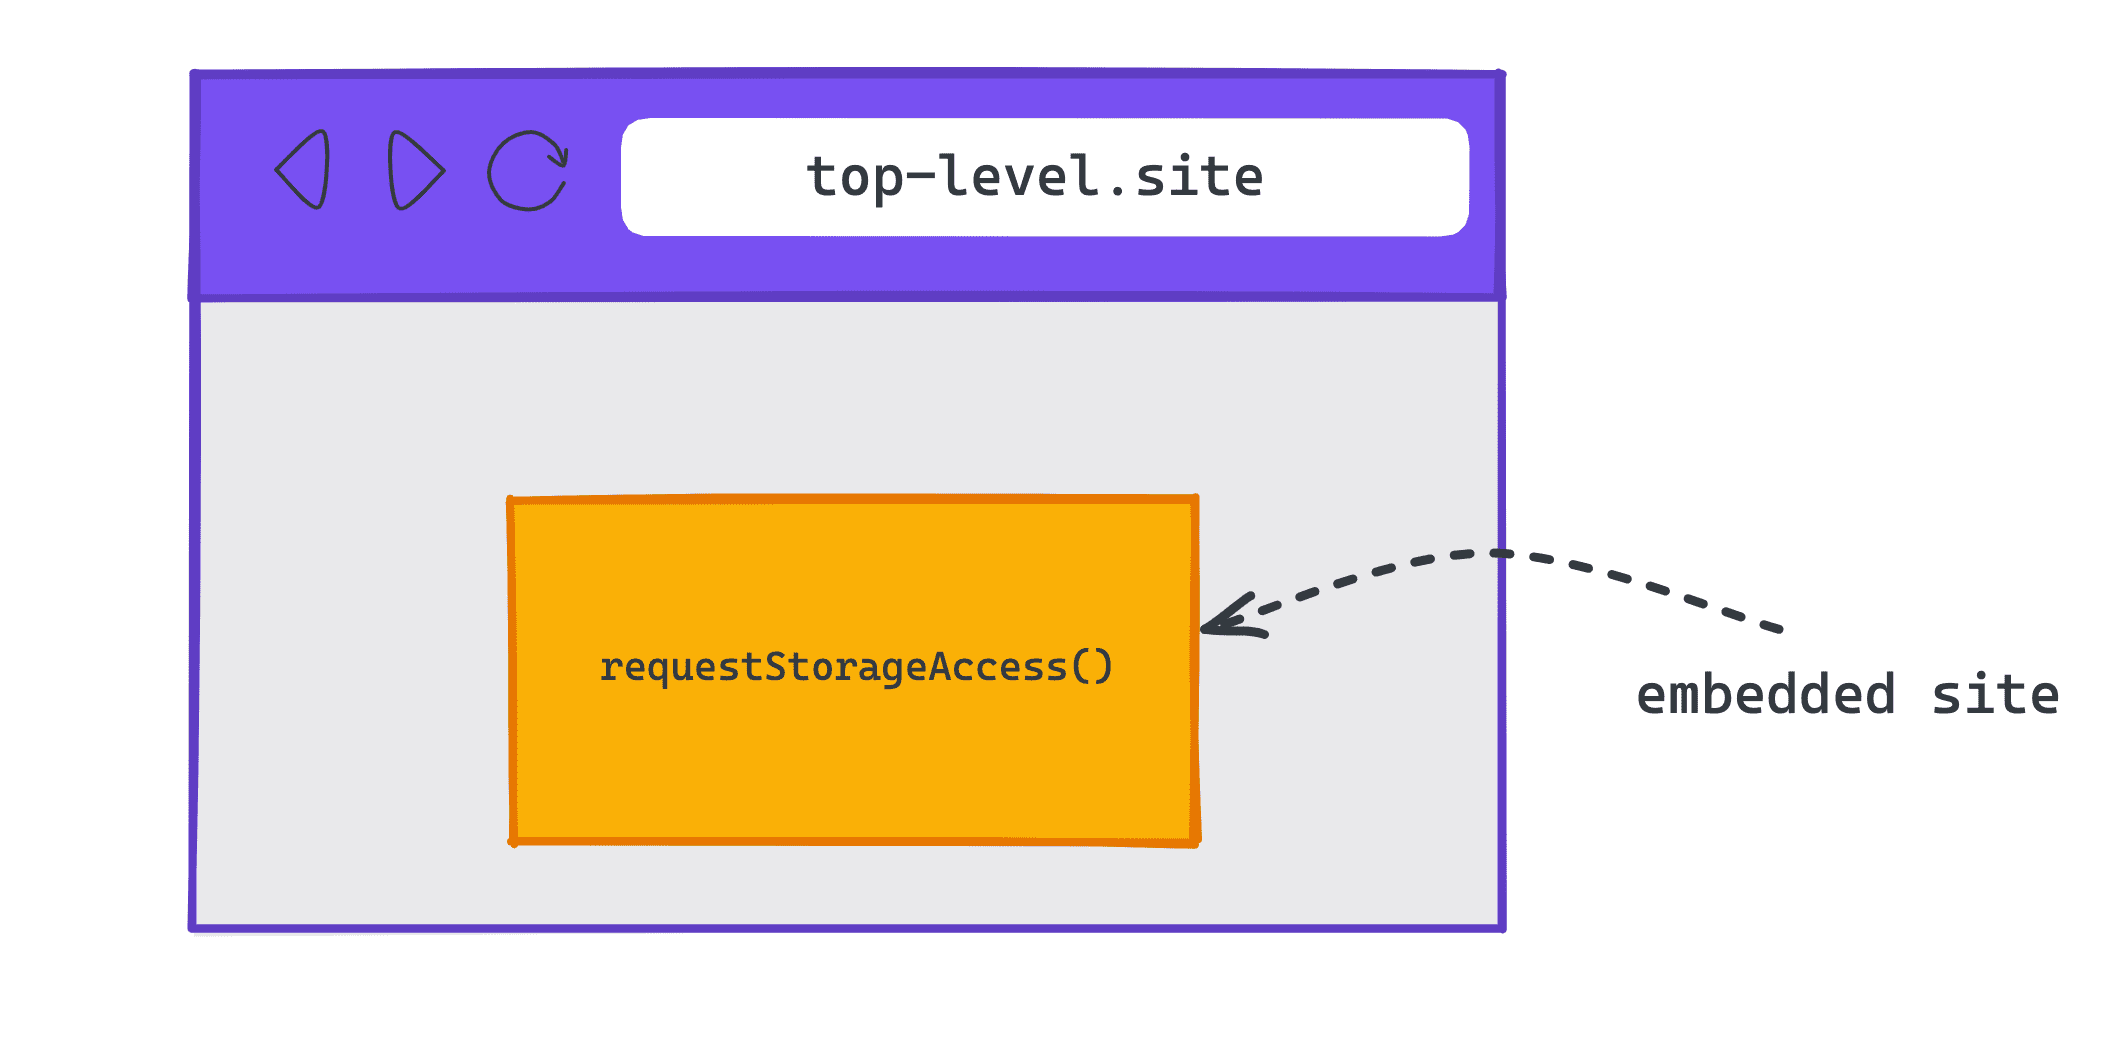 Diagramm mit einer eingebetteten Website auf einer Top-Level-Website